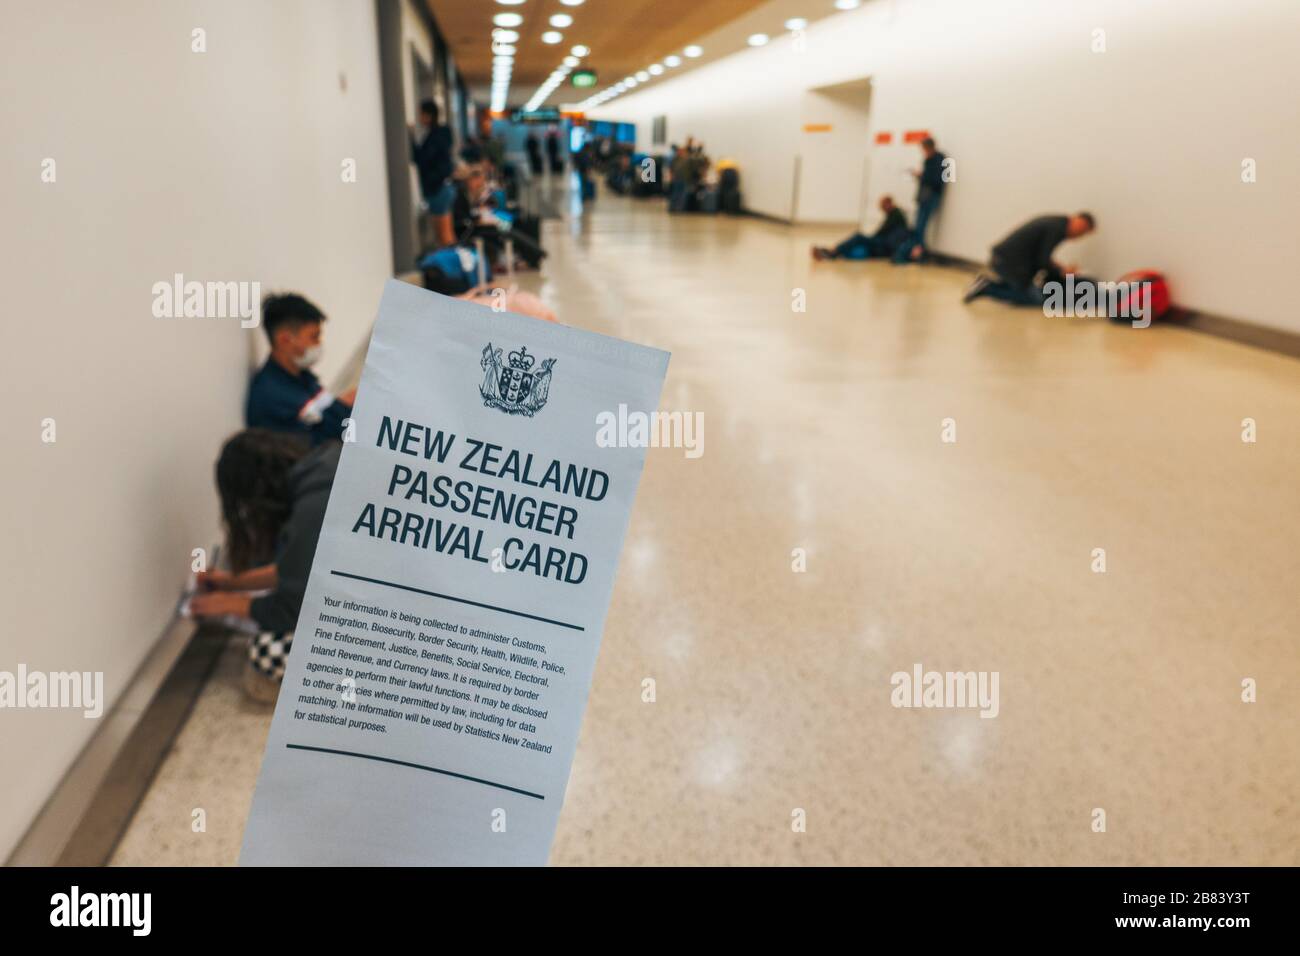 Cartes d'arrivée de passagers Nouvelle-Zélande récemment révisées données aux passagers arrivant à l'aéroport international d'Auckland, pendant la pandémie COVID-19 Banque D'Images